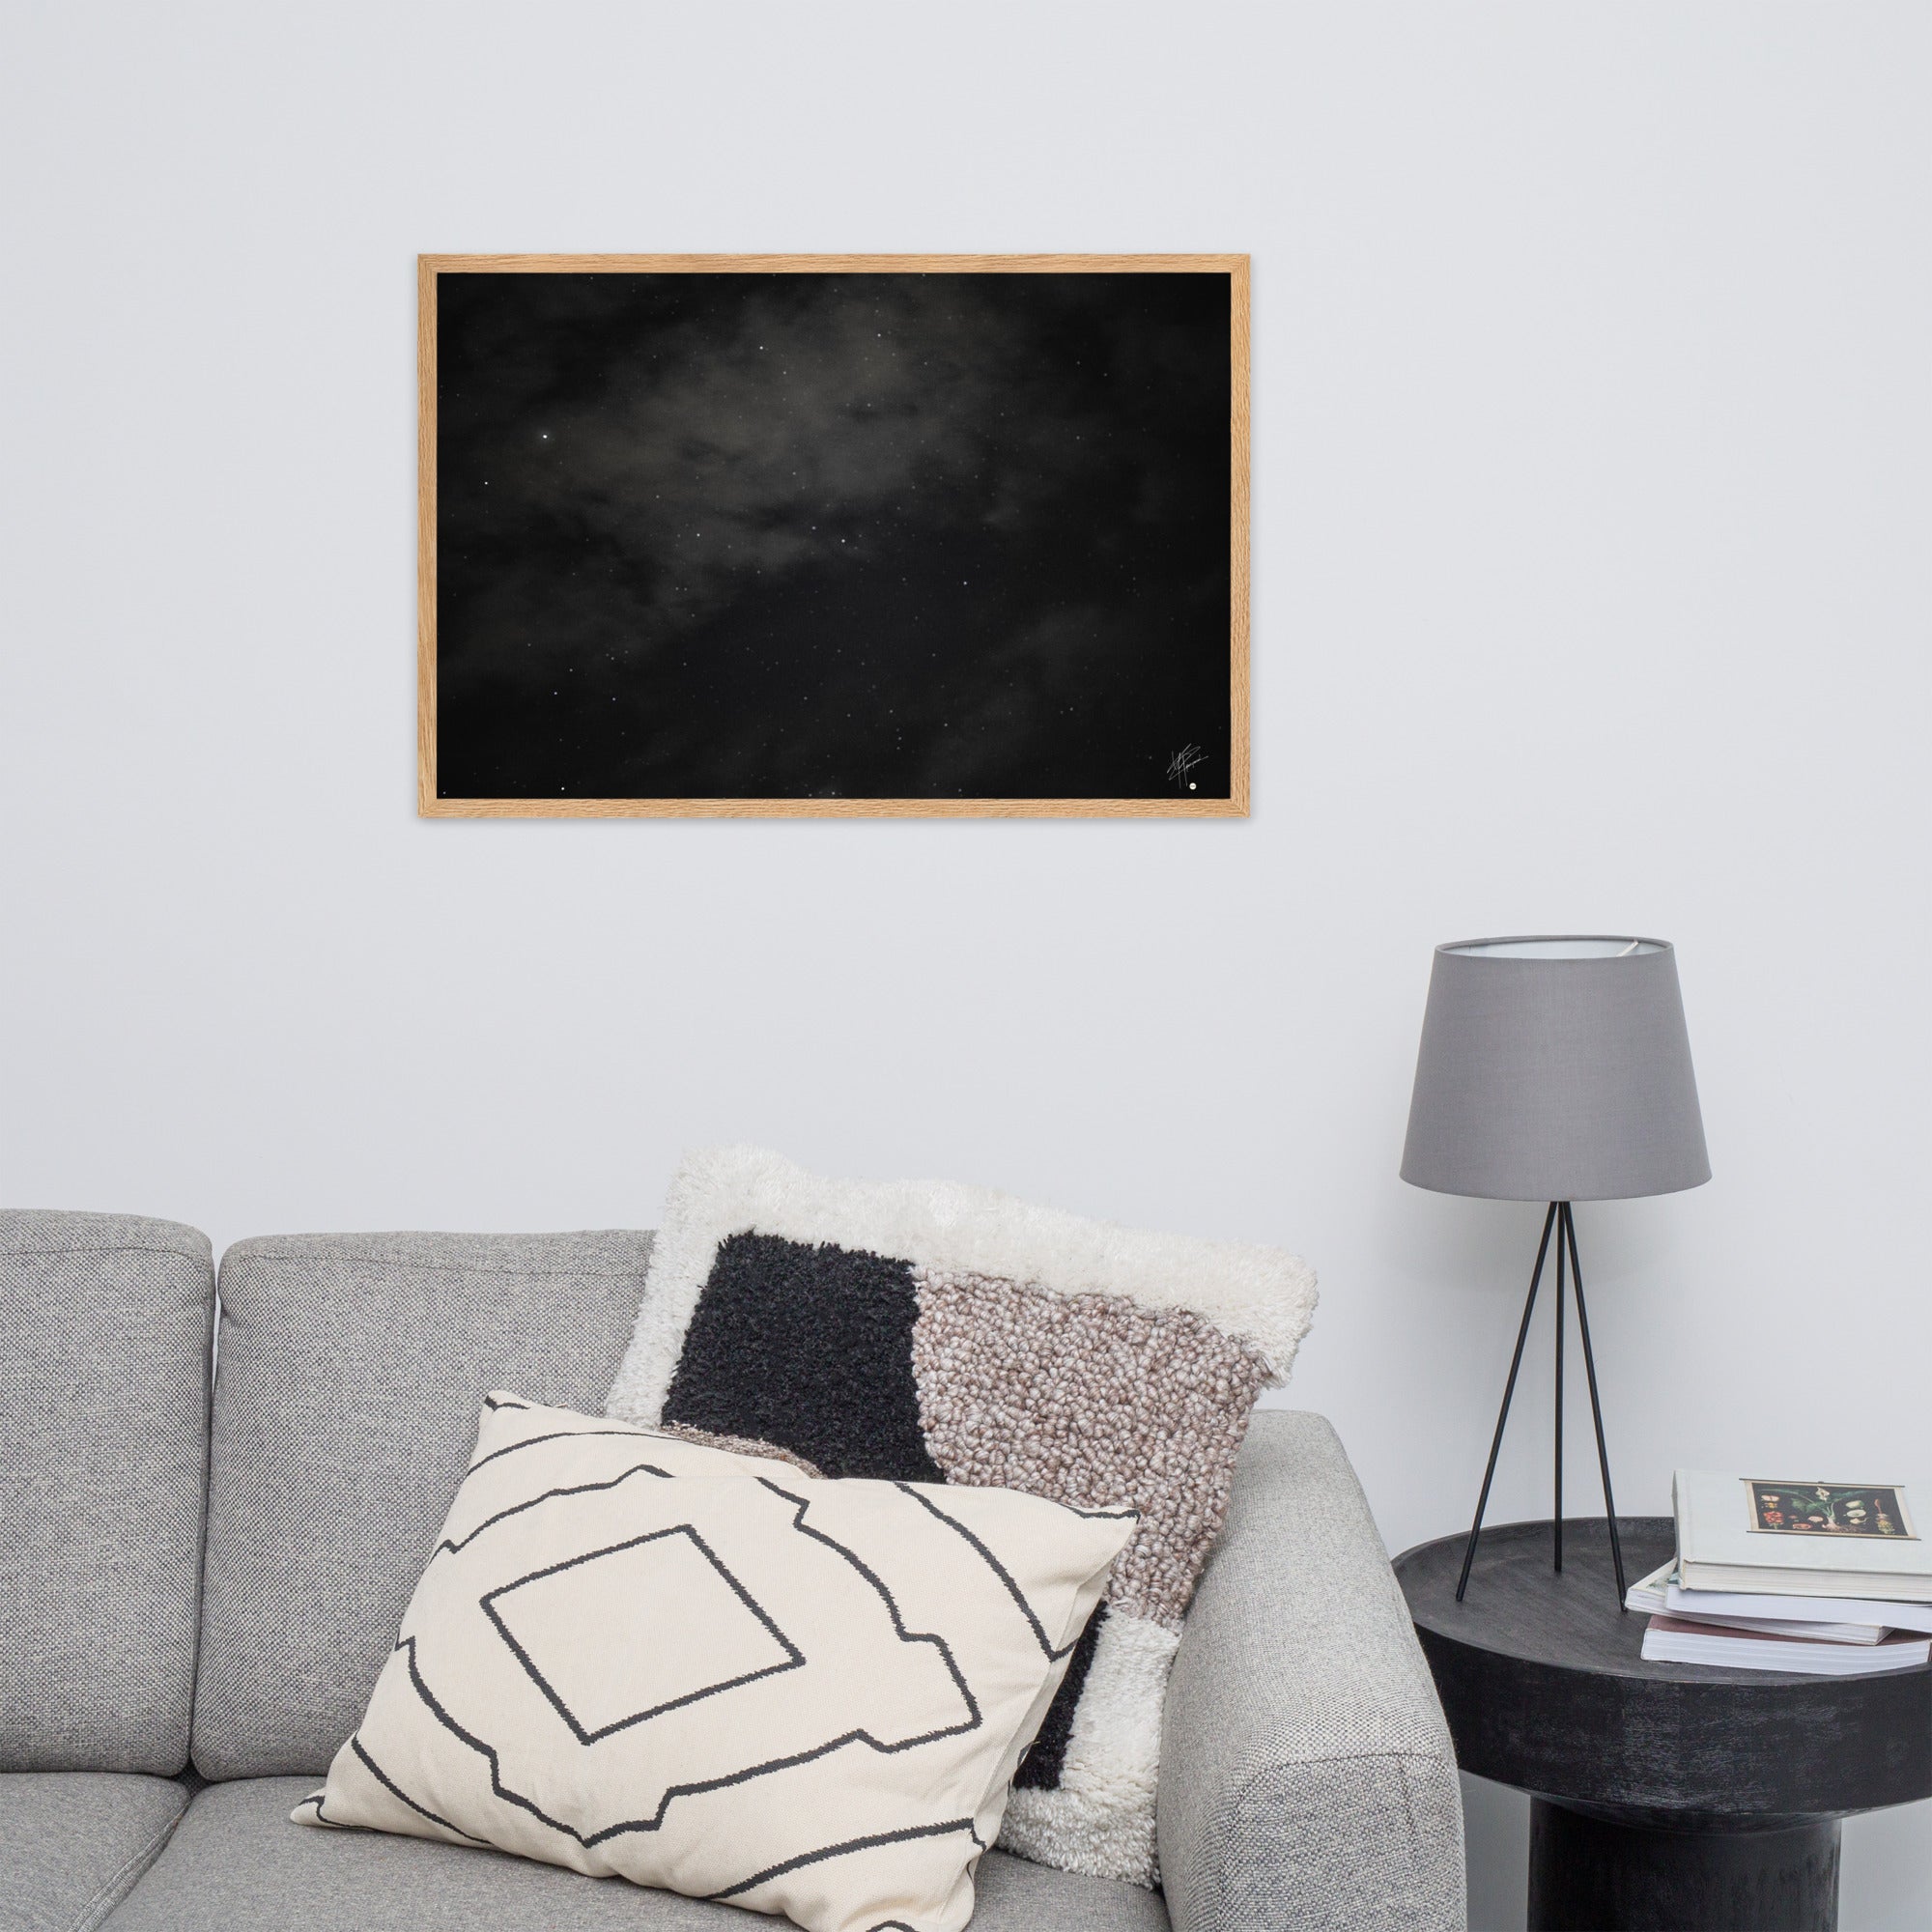 Photographie en noir et blanc du ciel étoilé avec un flou artistique, créé par la technique de pose longue, évoquant un tableau céleste en mouvement.